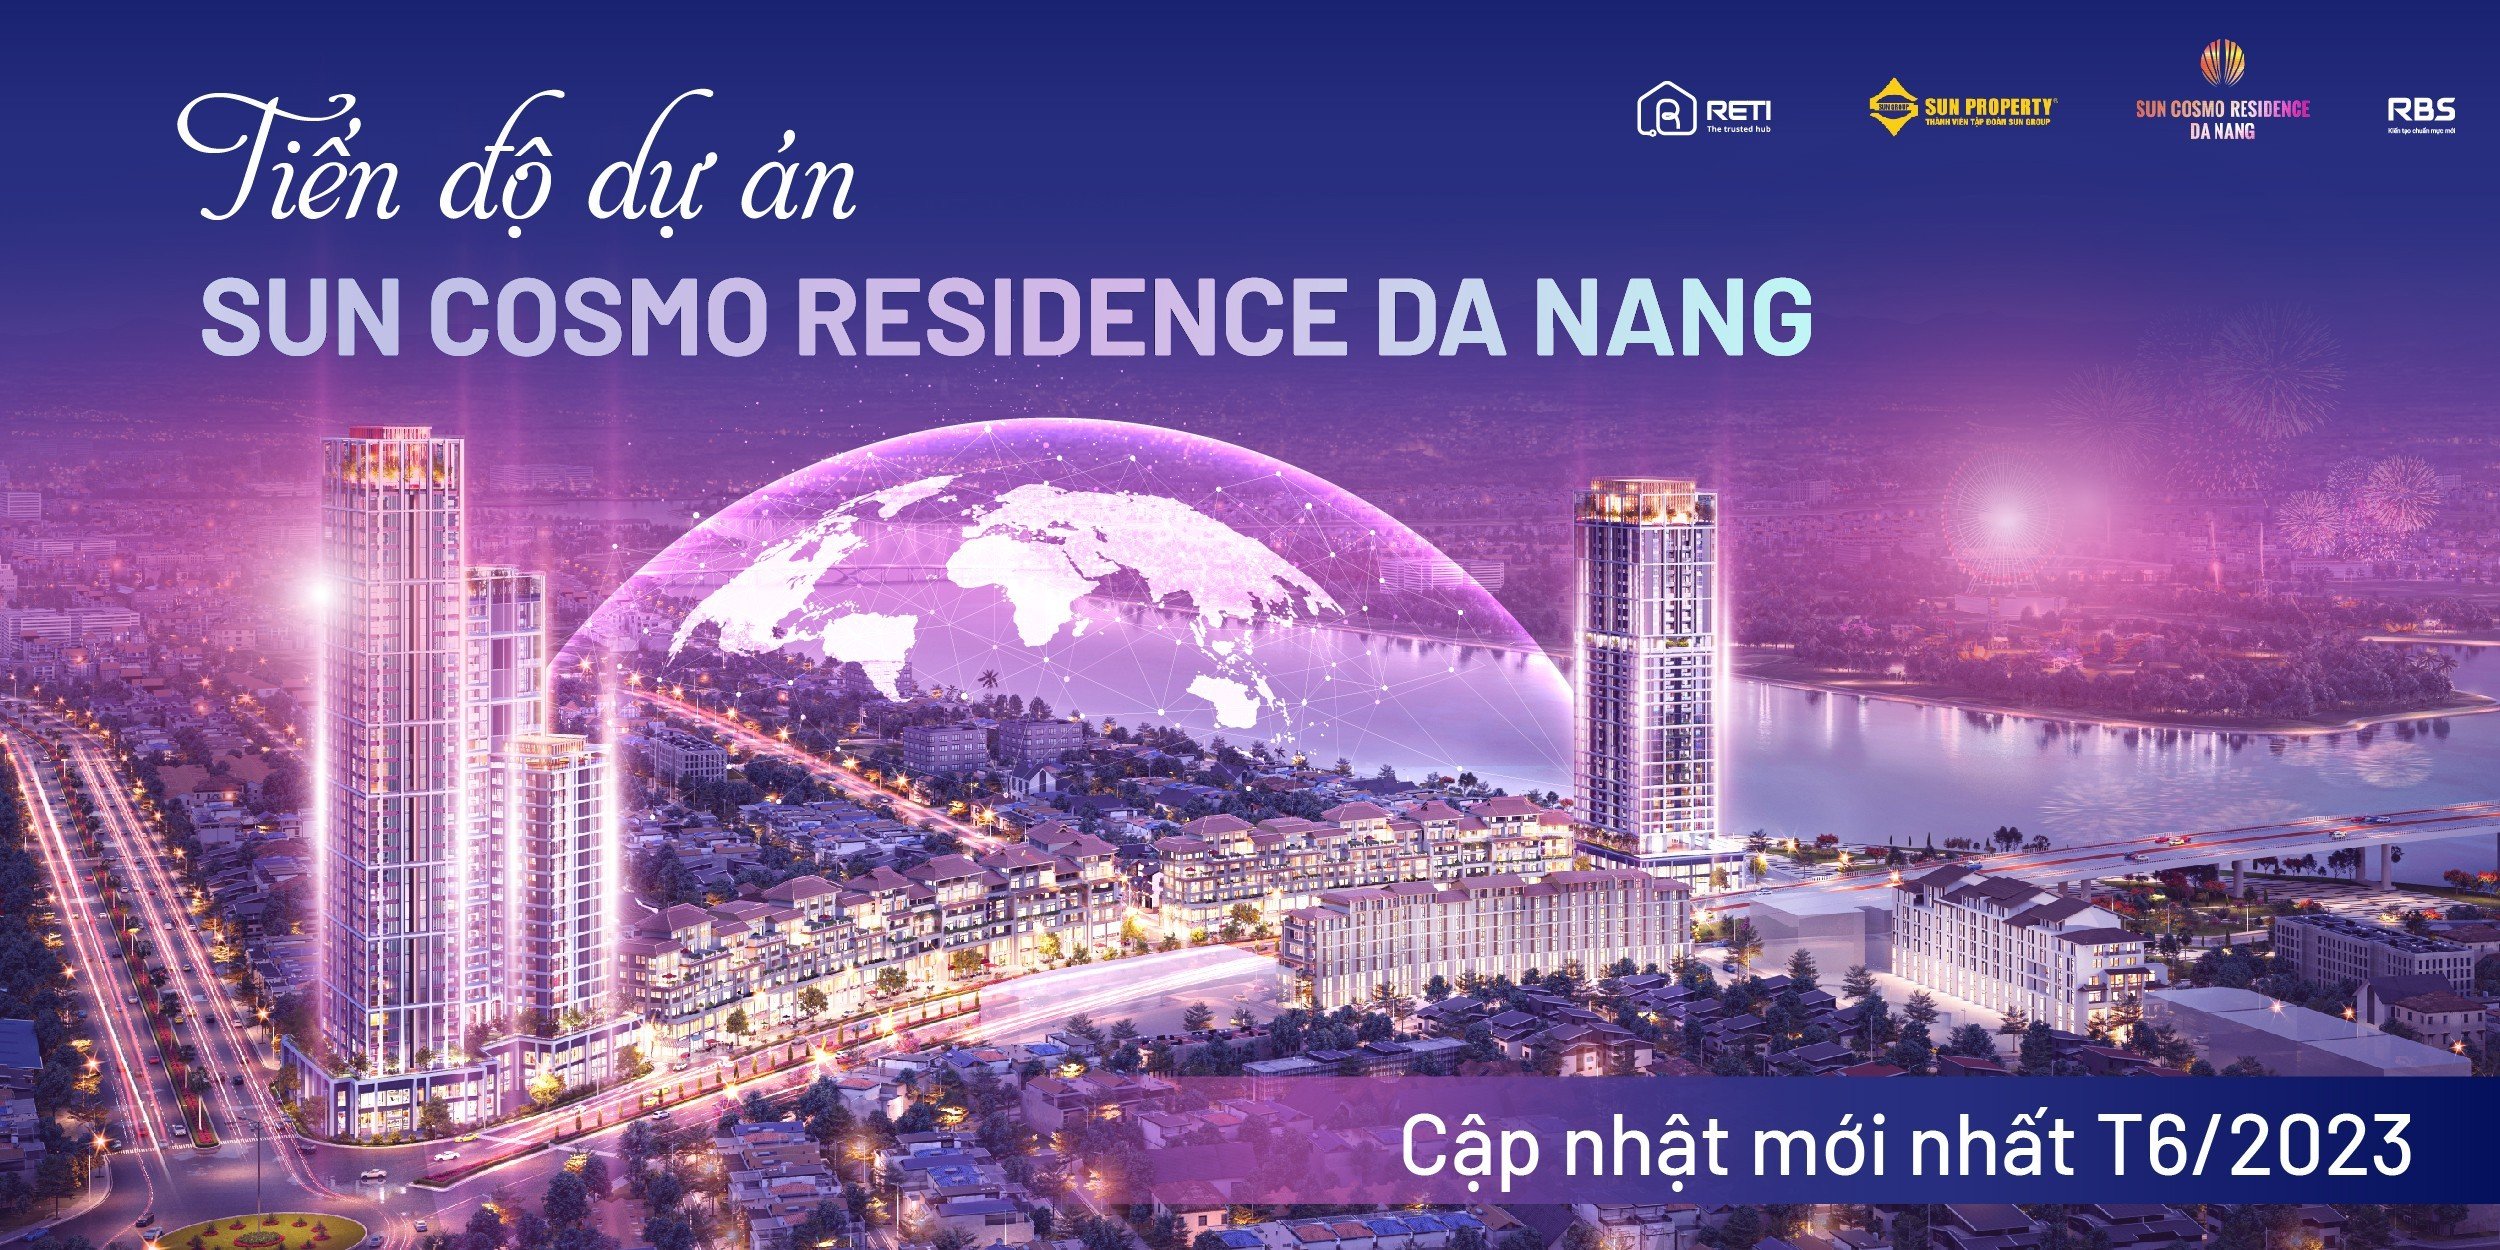 Tiến độ dự án Sun Cosmo Residence Đà Nẵng cập nhật mới nhất T6/2023 1